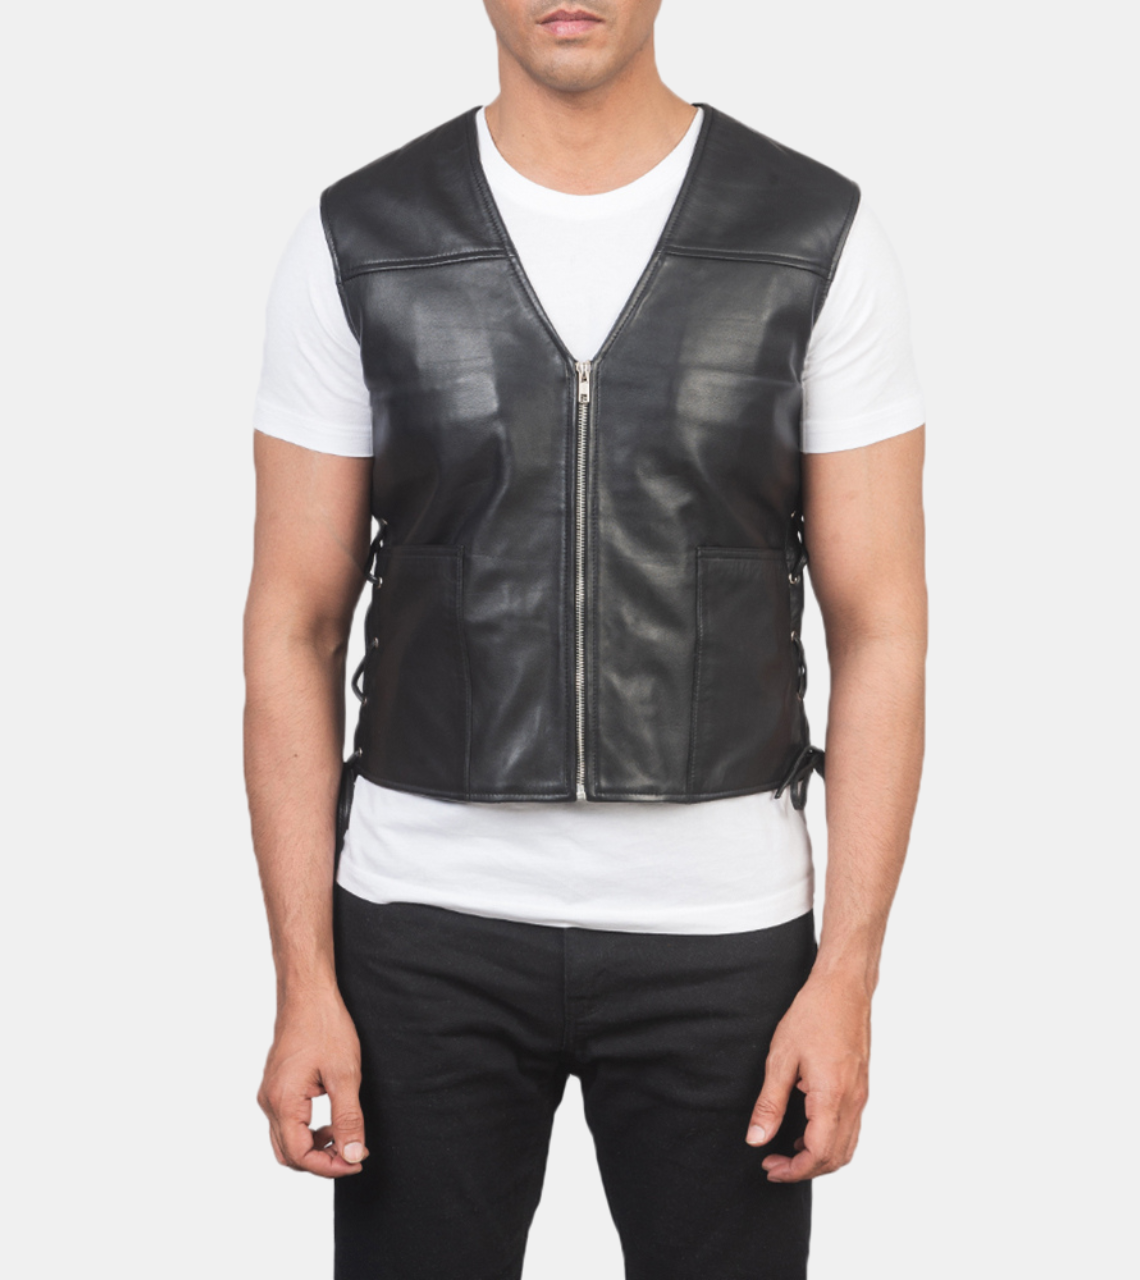 Judson Men's Black Leather Vest